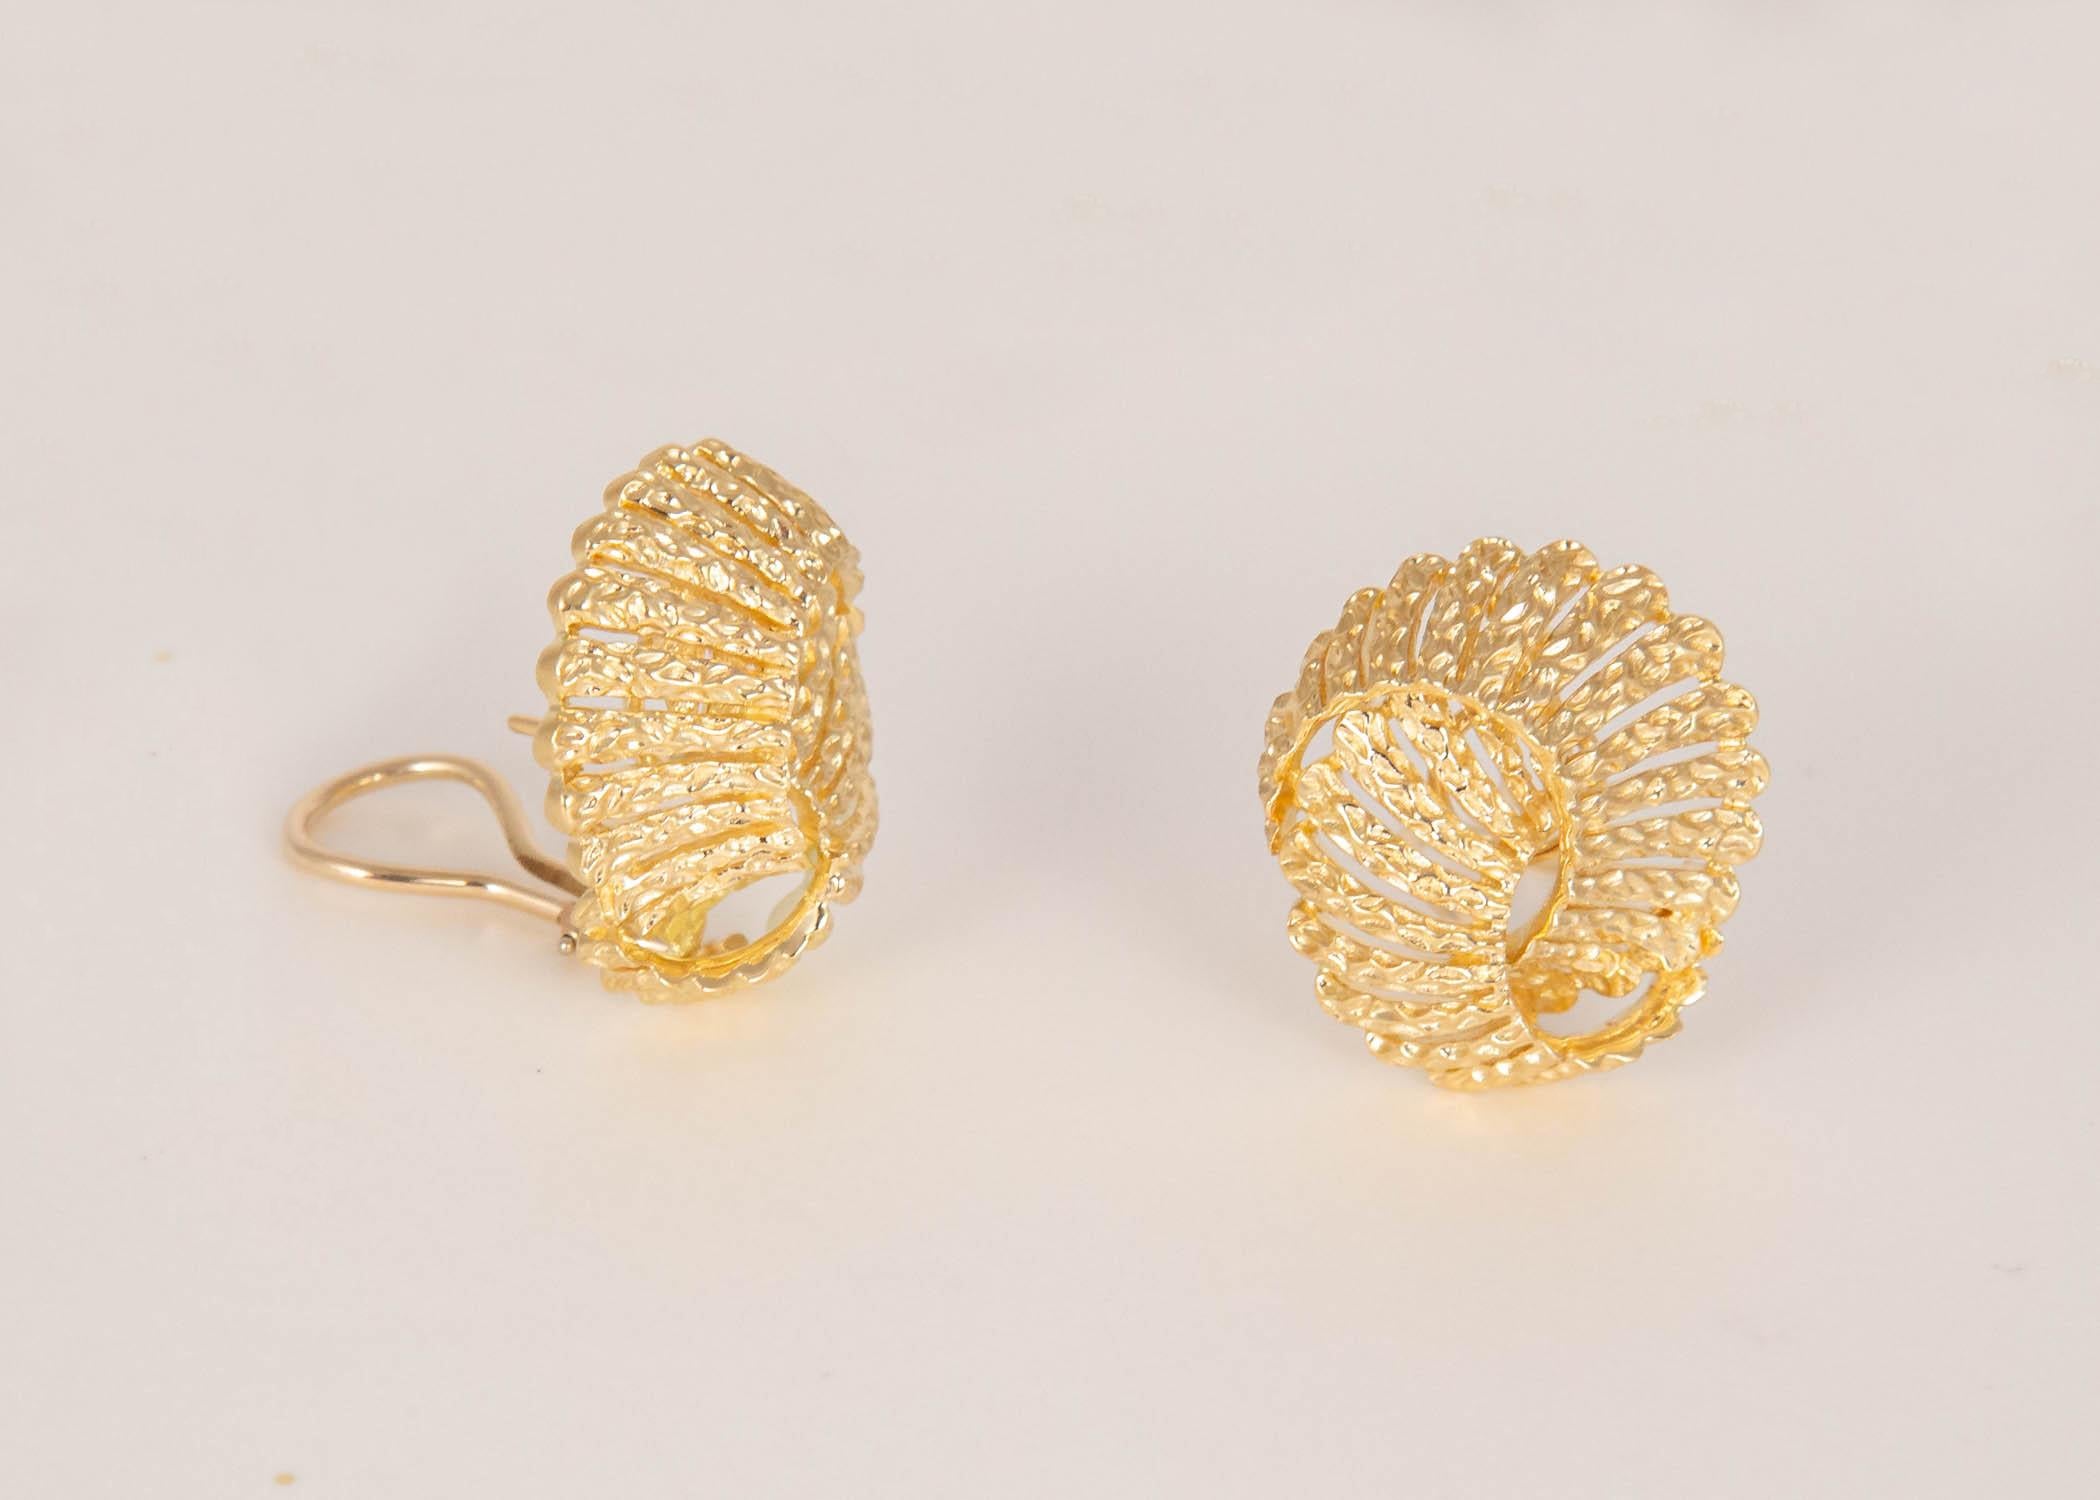 Tout simplement élégant. Cette paire de boucles d'oreilles en or ajouré Tiffany & Co. est un excellent exemple du design classique et de la qualité qui font la réputation de Tiffany. taille de 1 pouce.